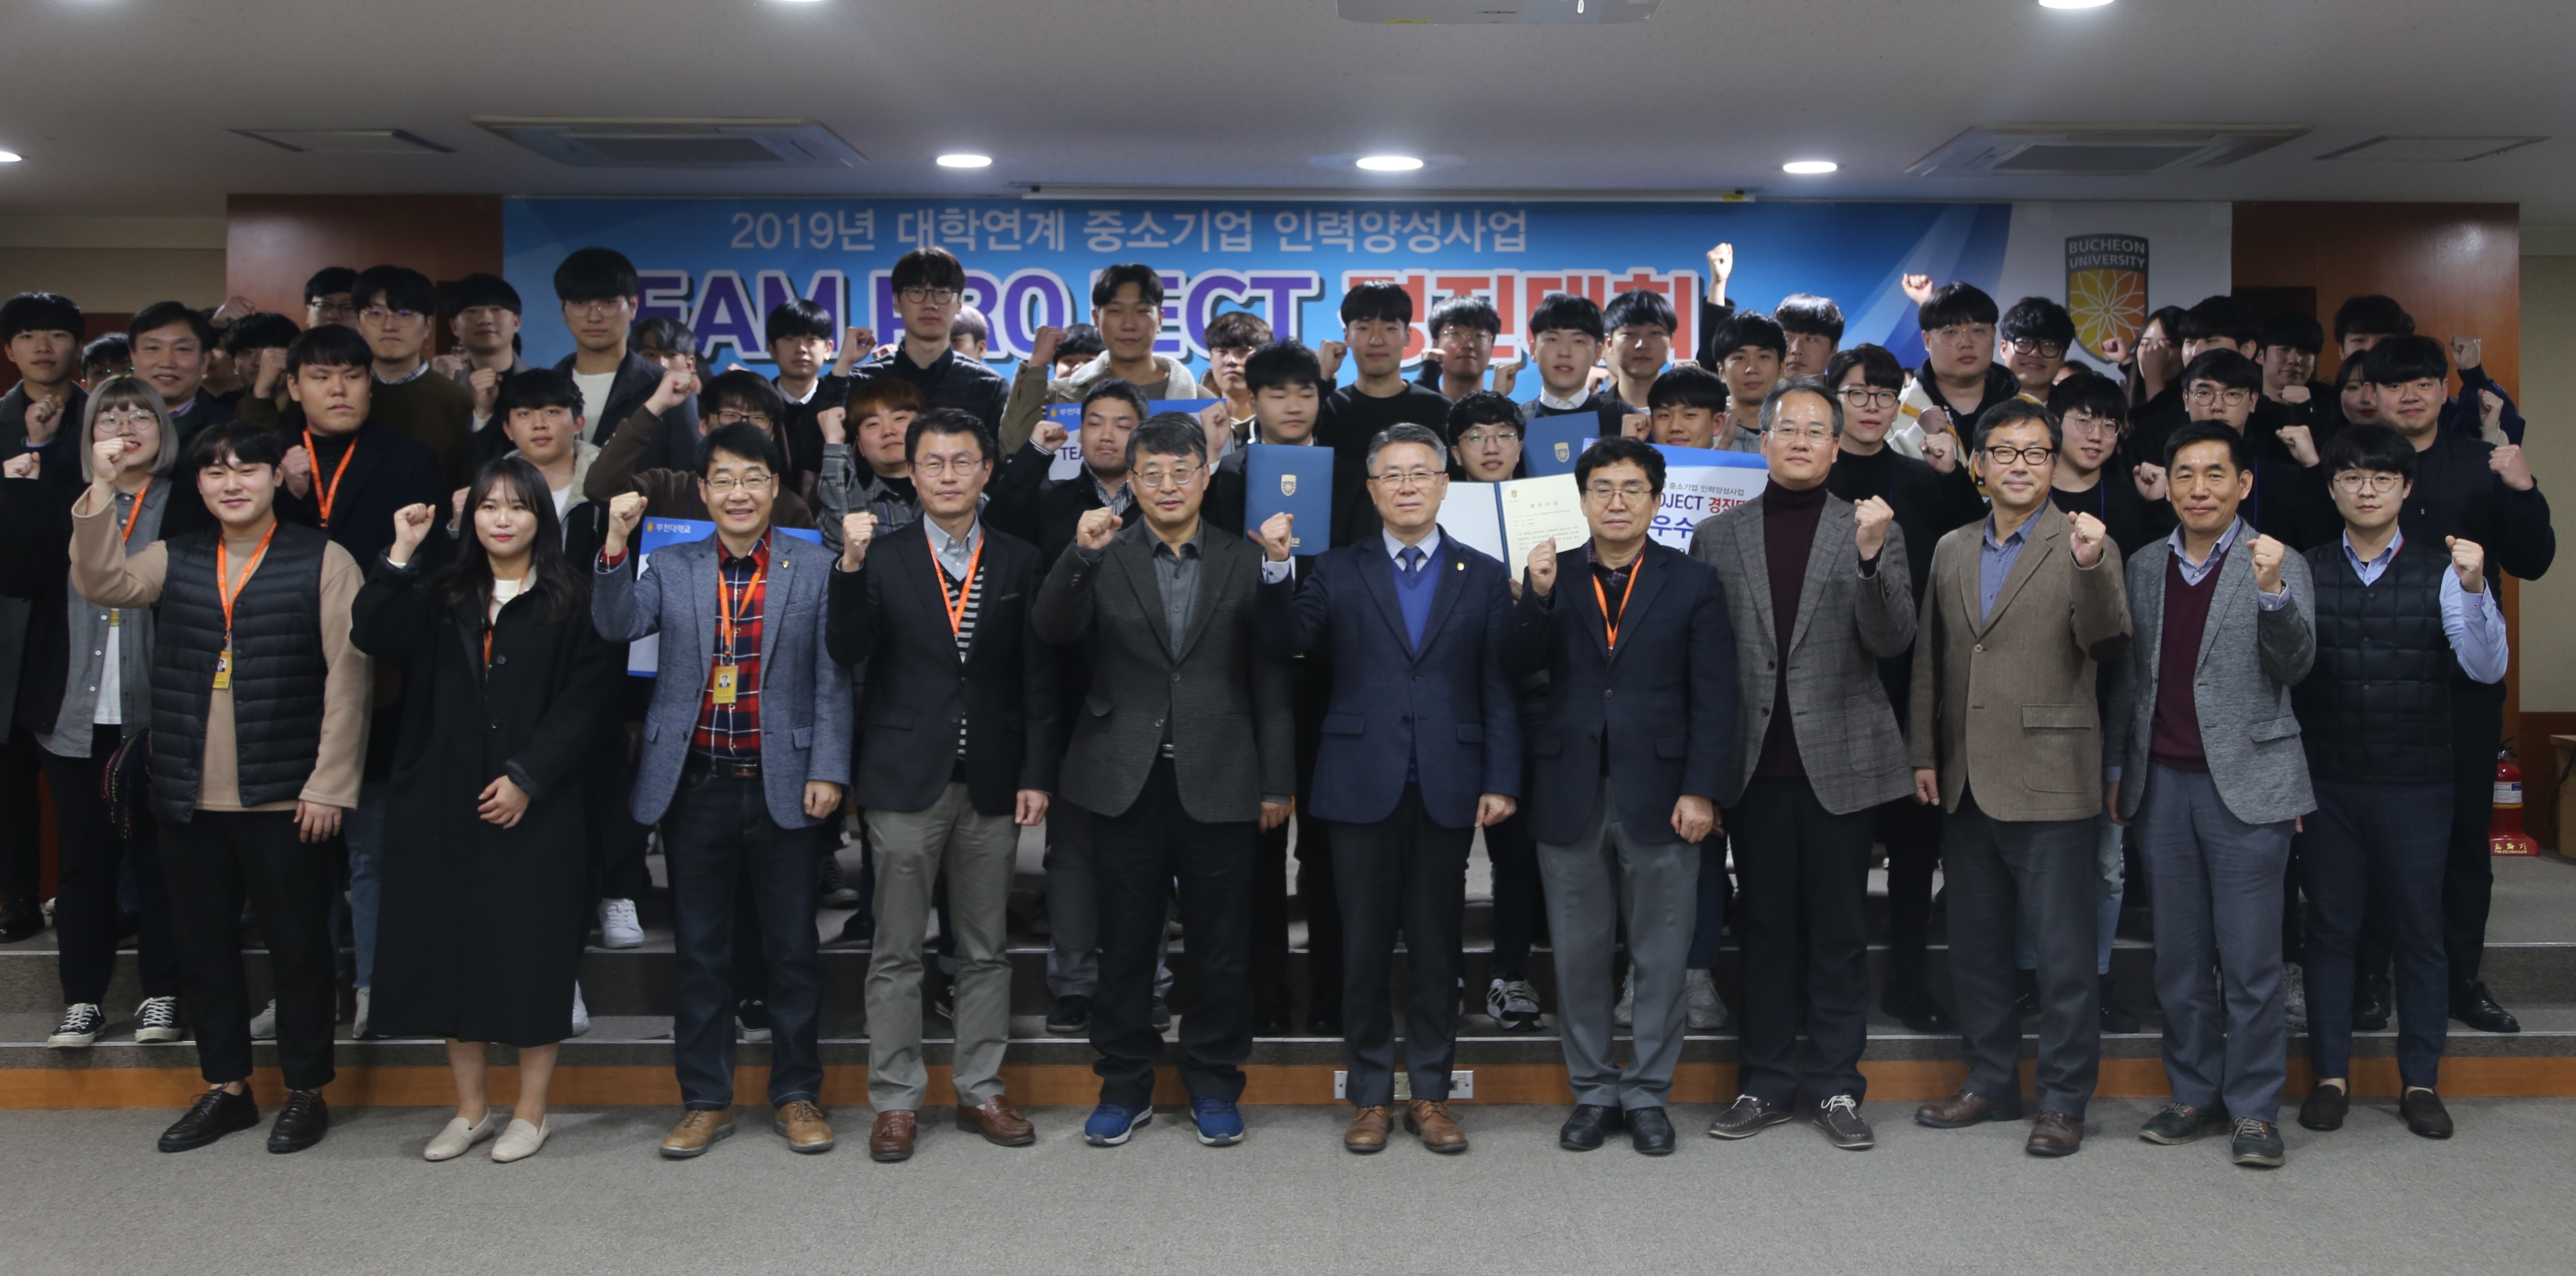 부천대학교 대학연계 중소기업 인력양성사업 『2019년 팀 프로젝트 경진대회』 개최